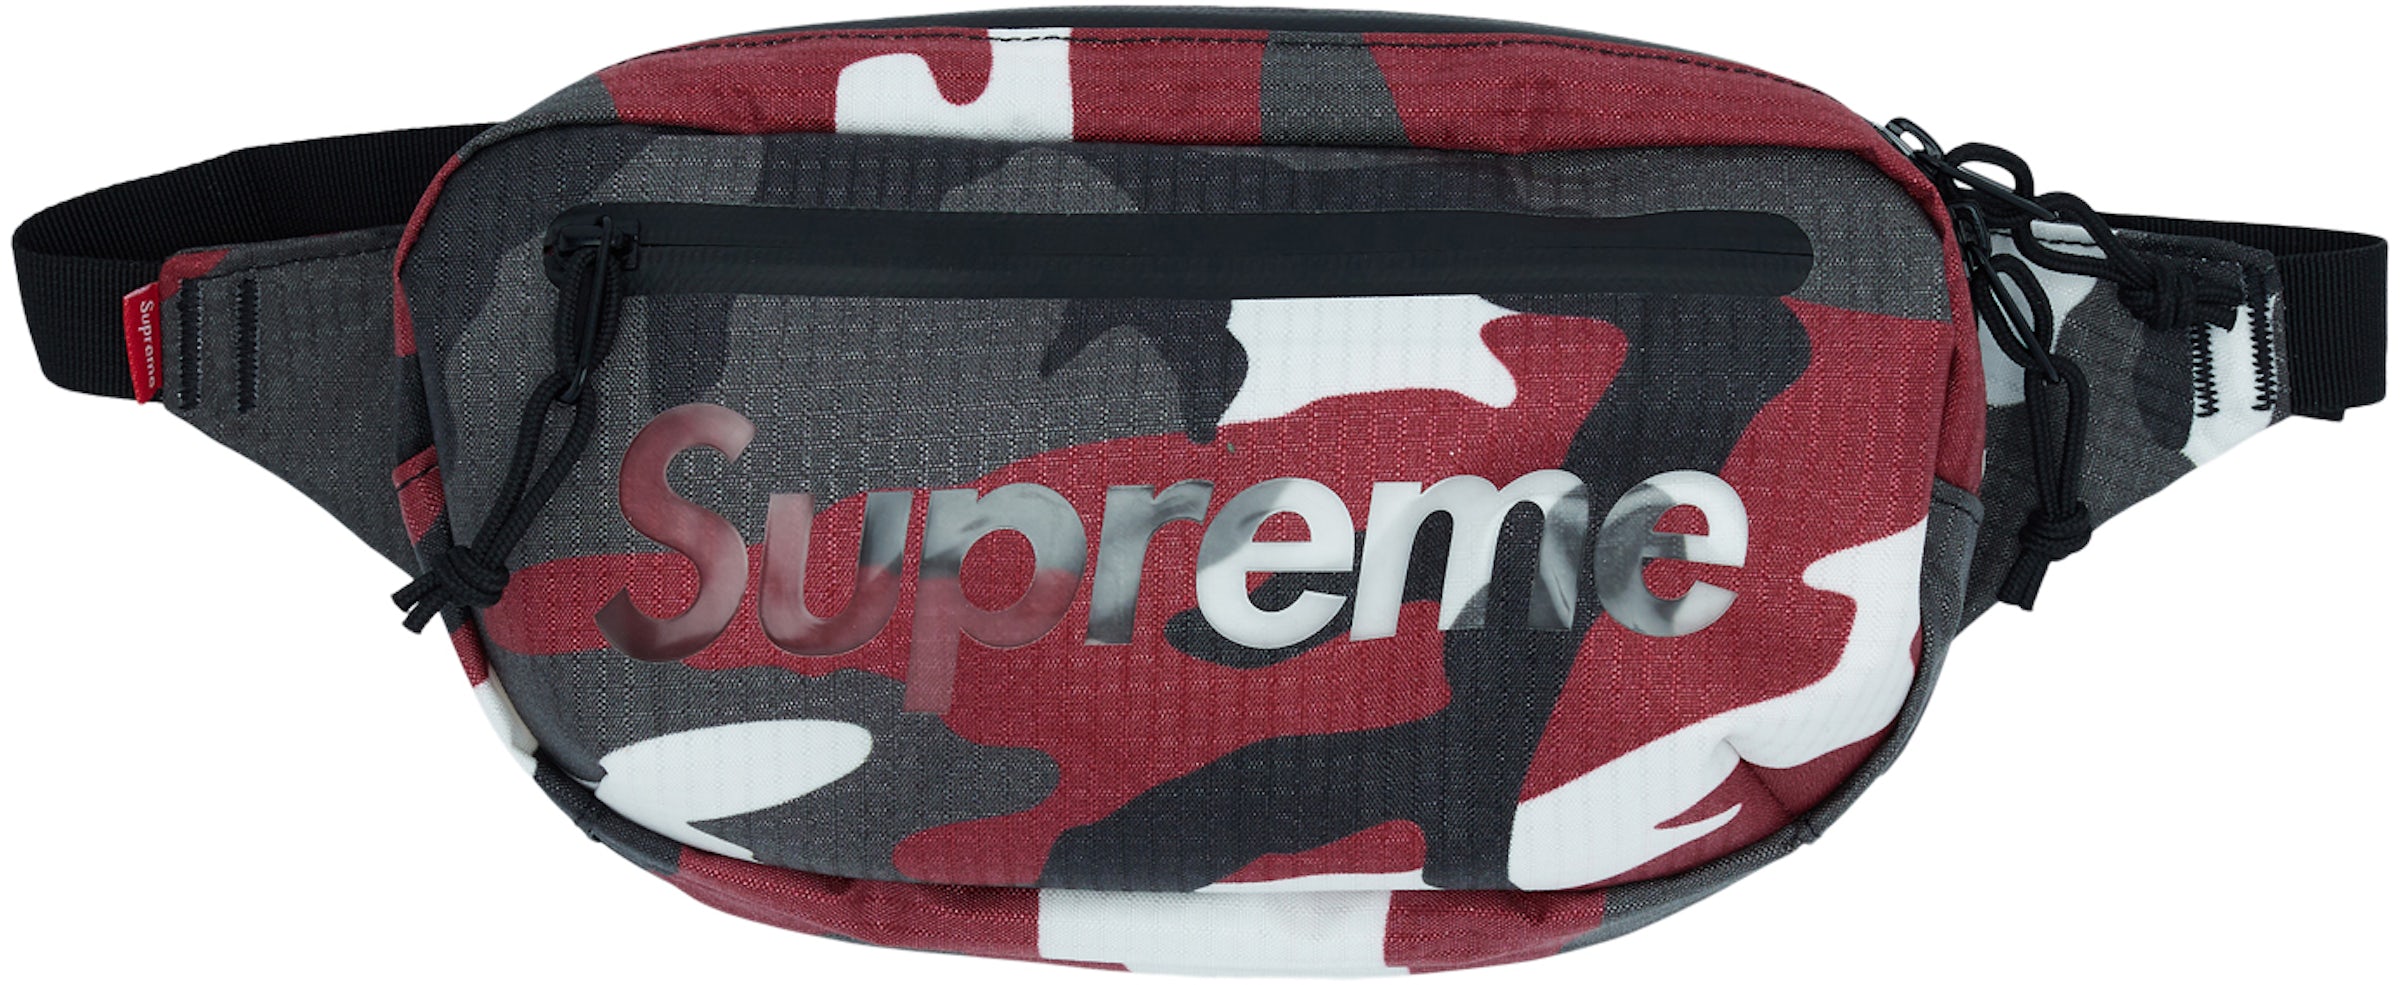 Suede Caps — Supreme Waist Bag (CAMO)